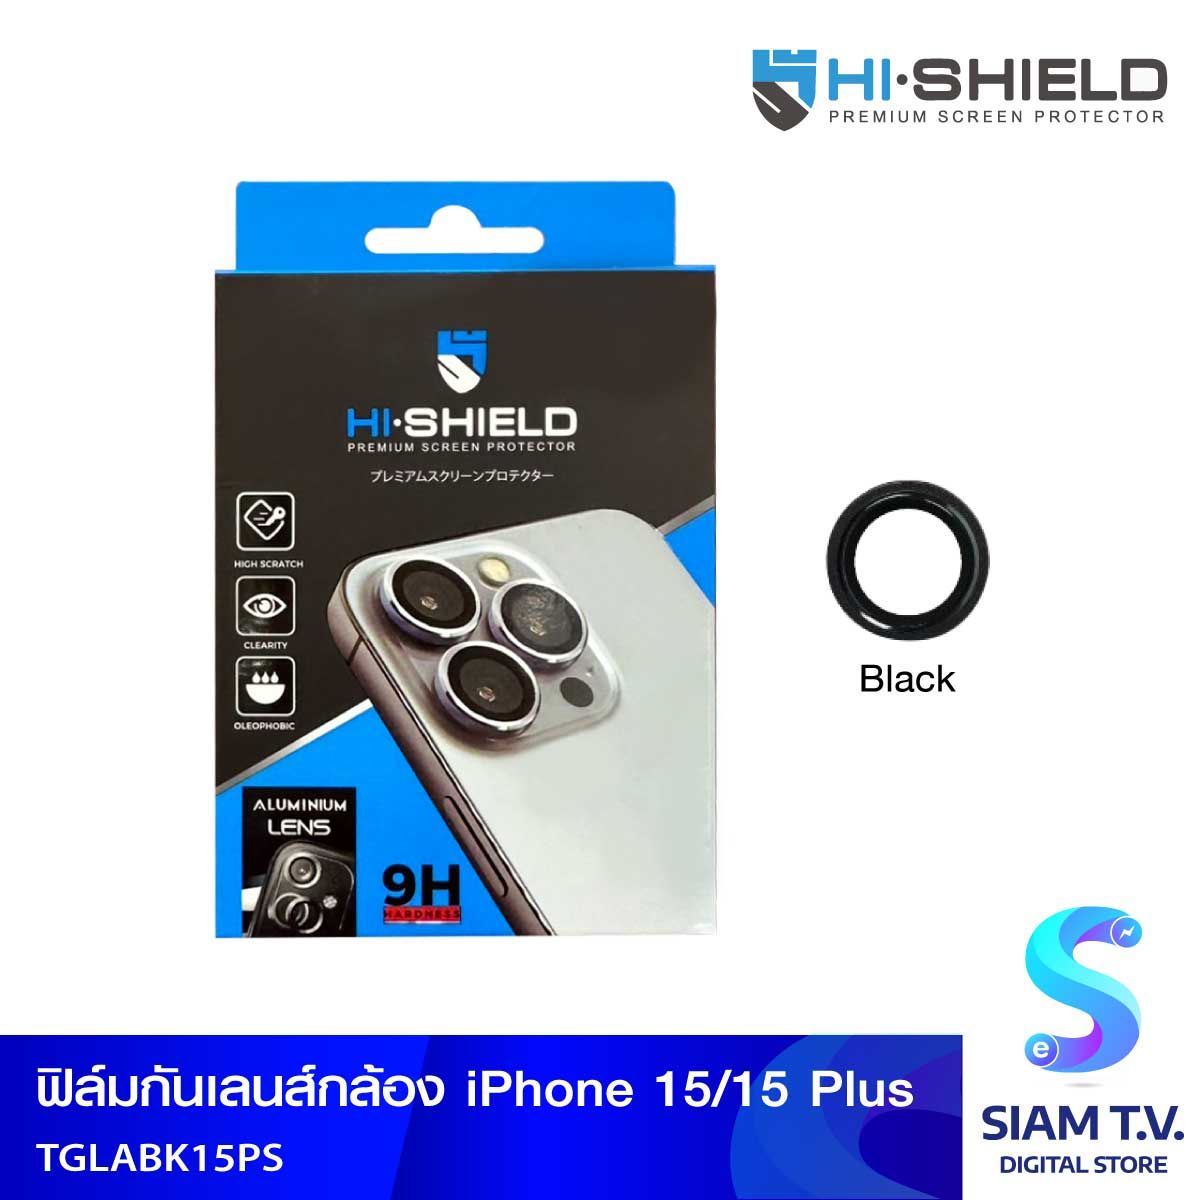 HISHIELD Aluminium Lens Black iPhone 15/15Plus